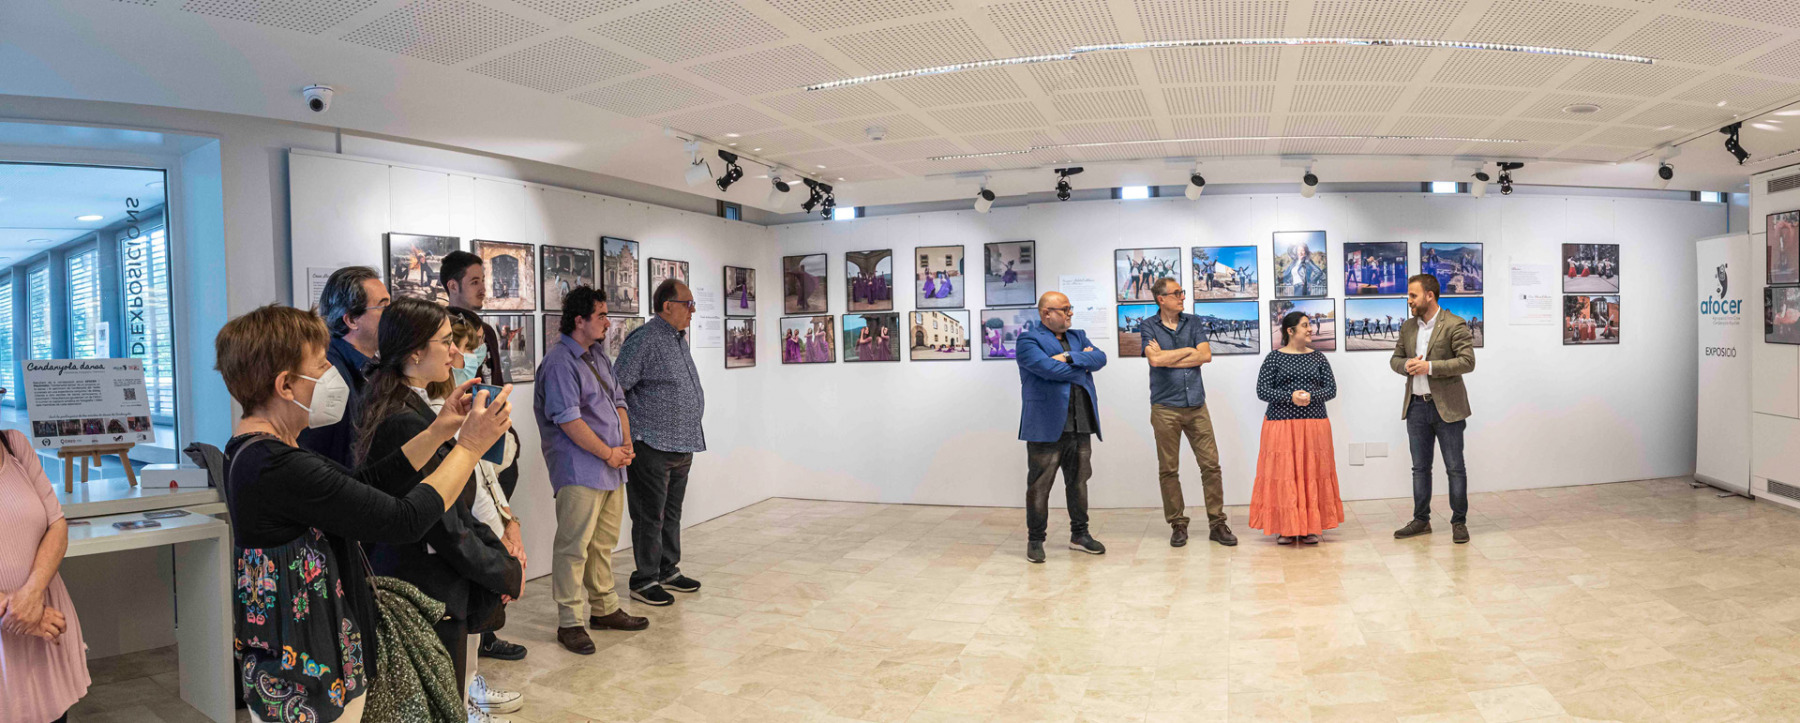 Inauguració de l'exposició 'Dansa i Patrimoni' AFOCER a la Sala Elisa Arimany